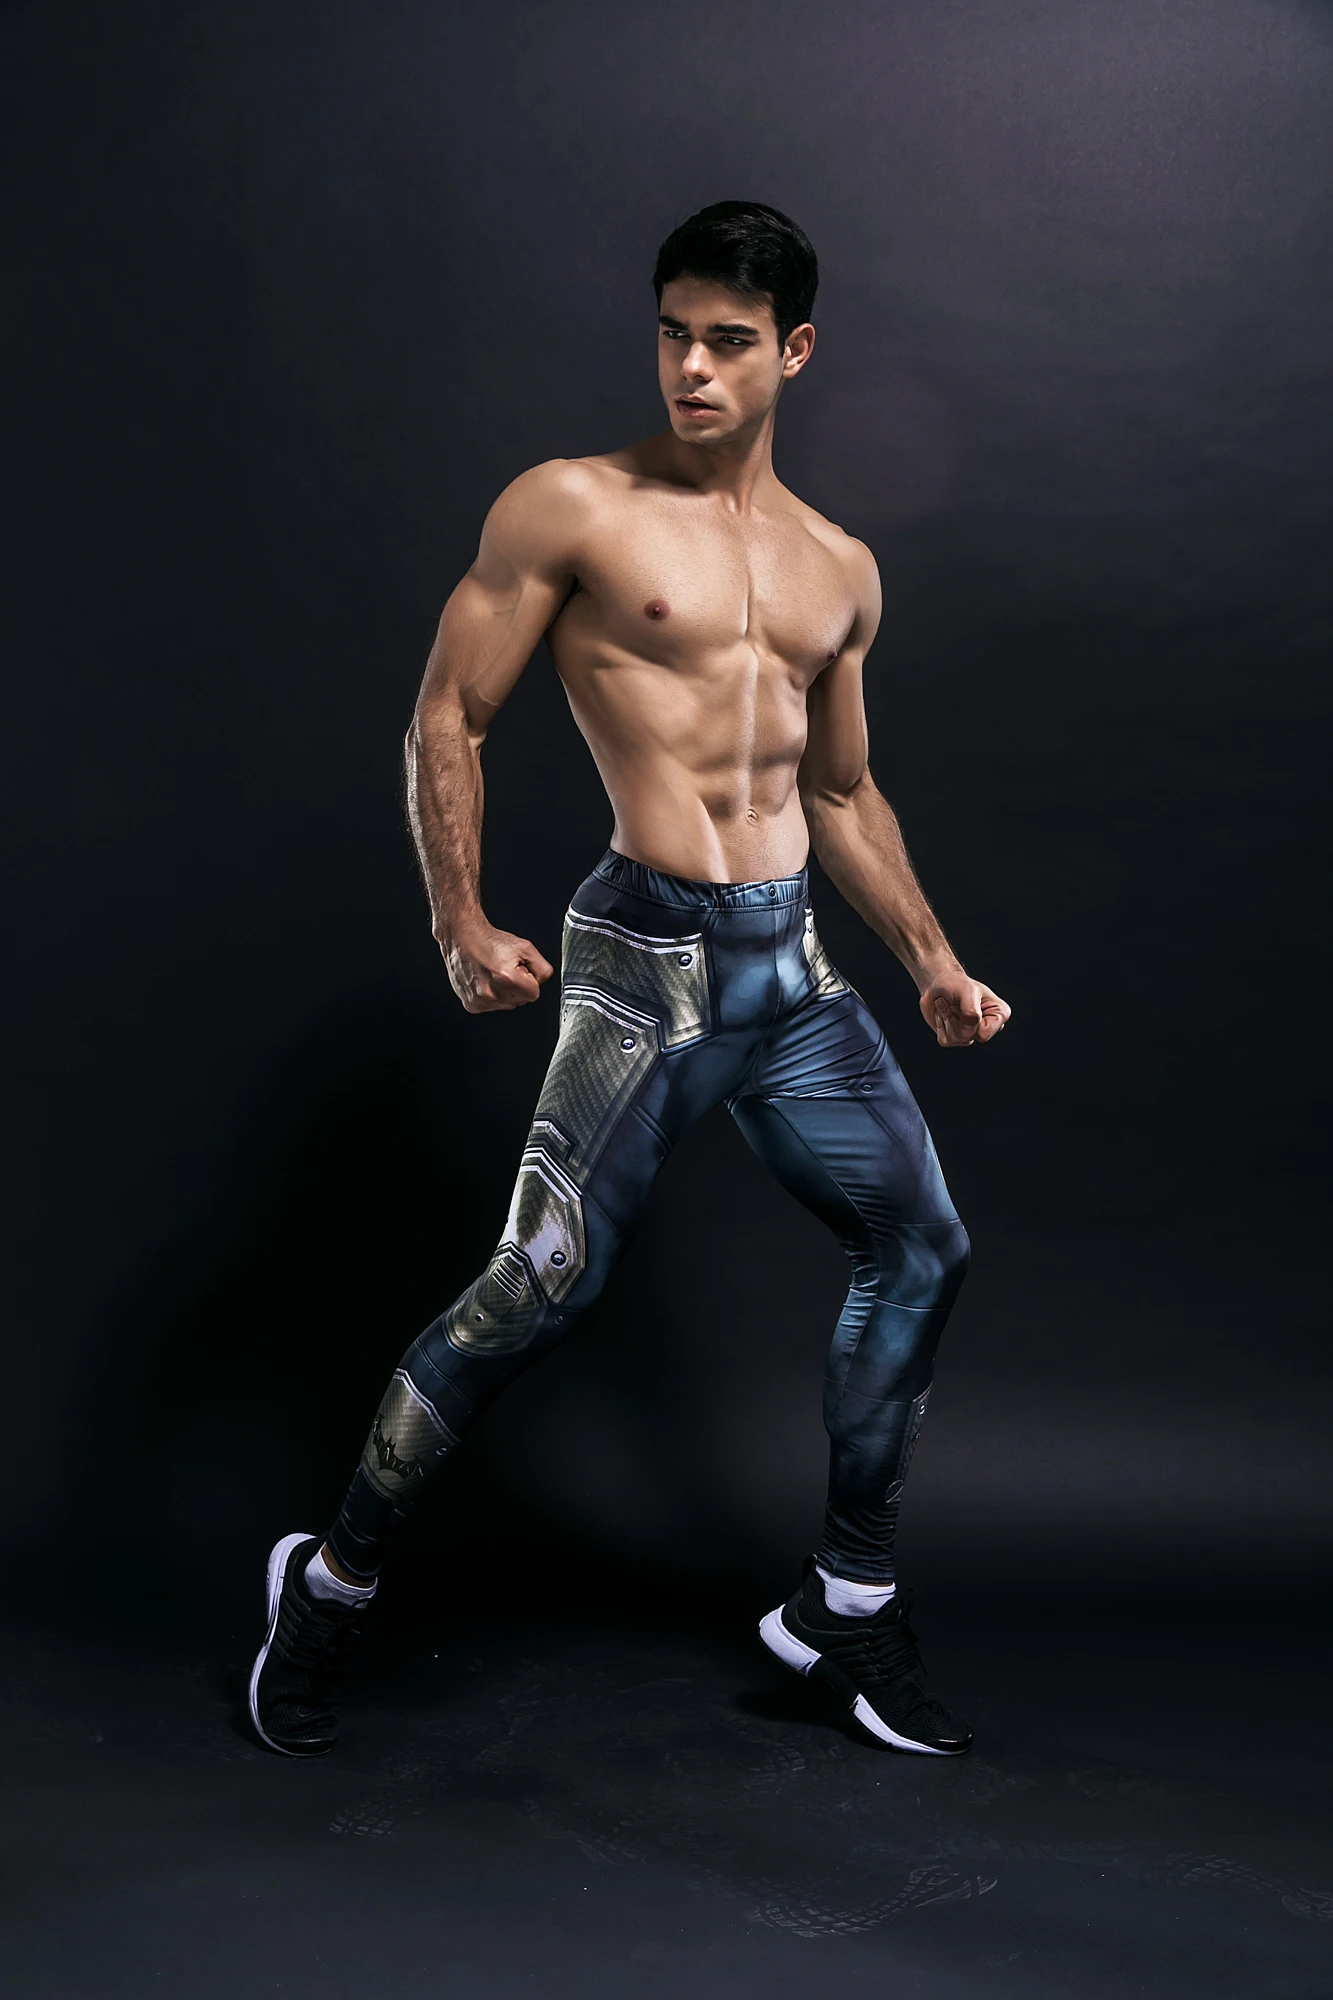 Обтягивающие спортивные штаны для мужчин, компрессионные штаны для мужчин, модные леггинсы для мужчин, для бега, мужские 3D штаны для фитнеса, Супермен, эластичные брюки